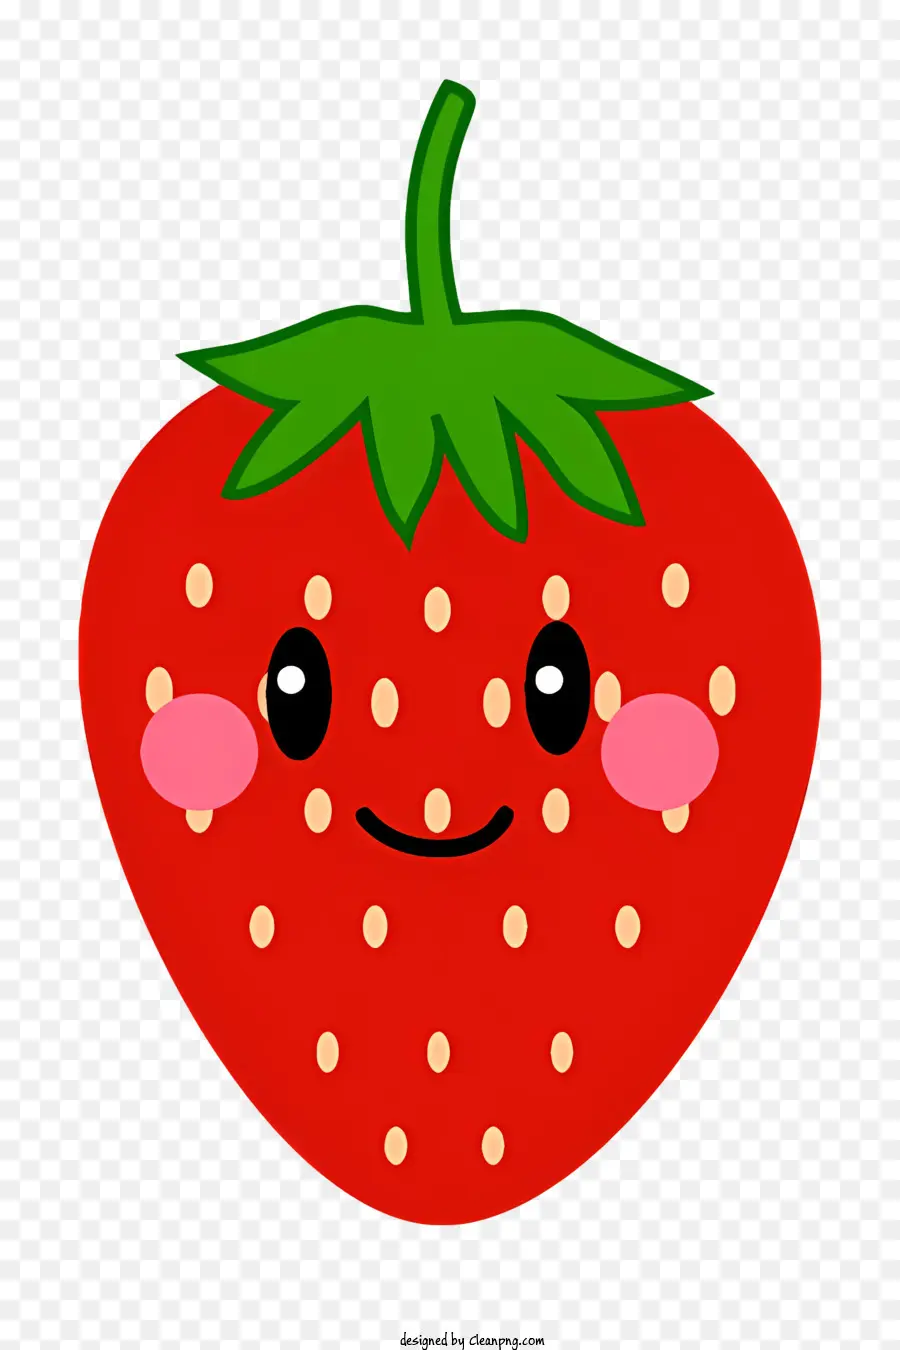 cartoon strawberry cute fruit friendly strawberry smiling strawberry strawberry with closed eyes